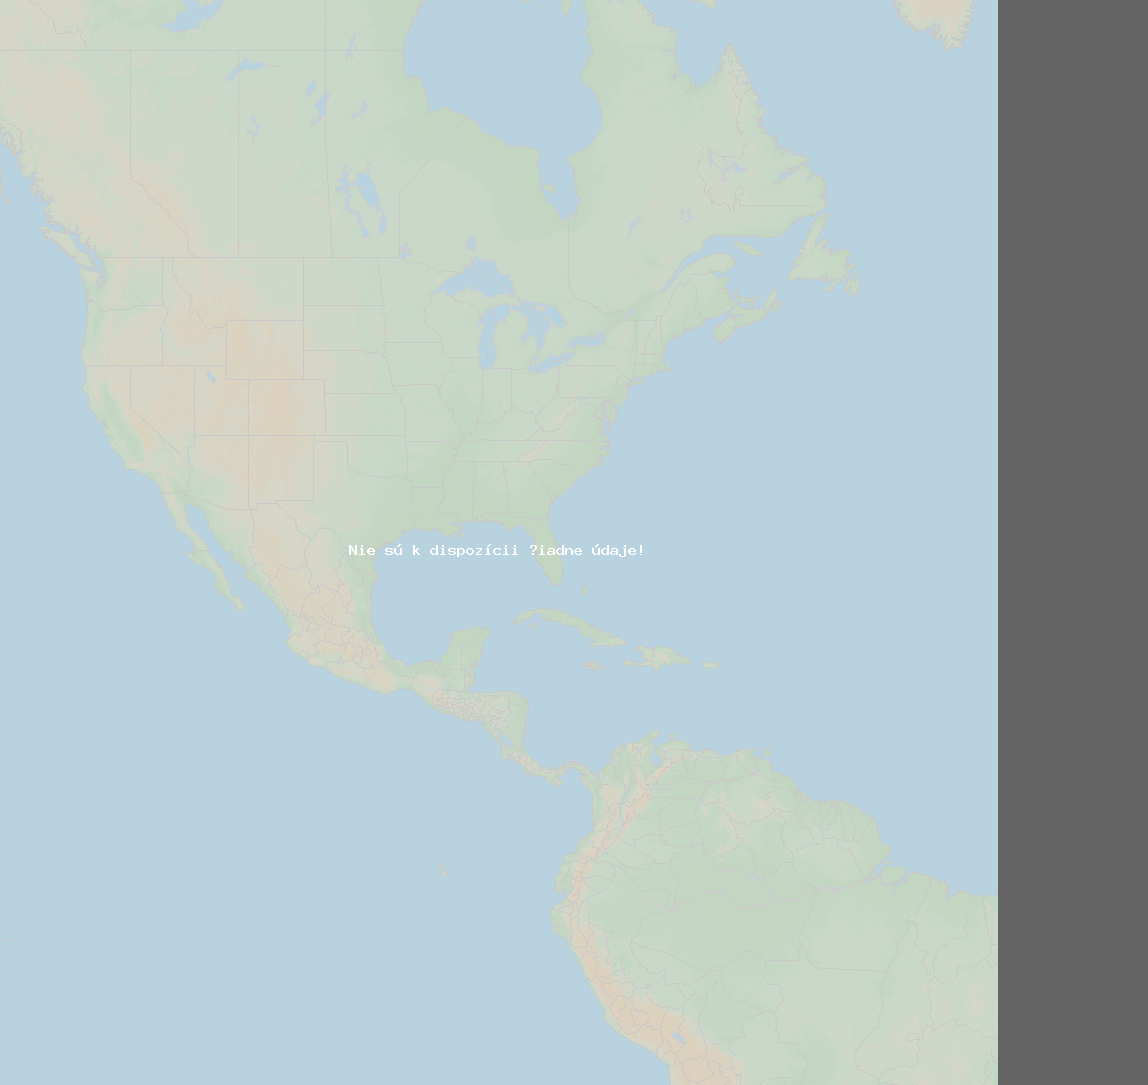 Pomer bleskov (Stanica Baie-Comeau QC) North America 2019 